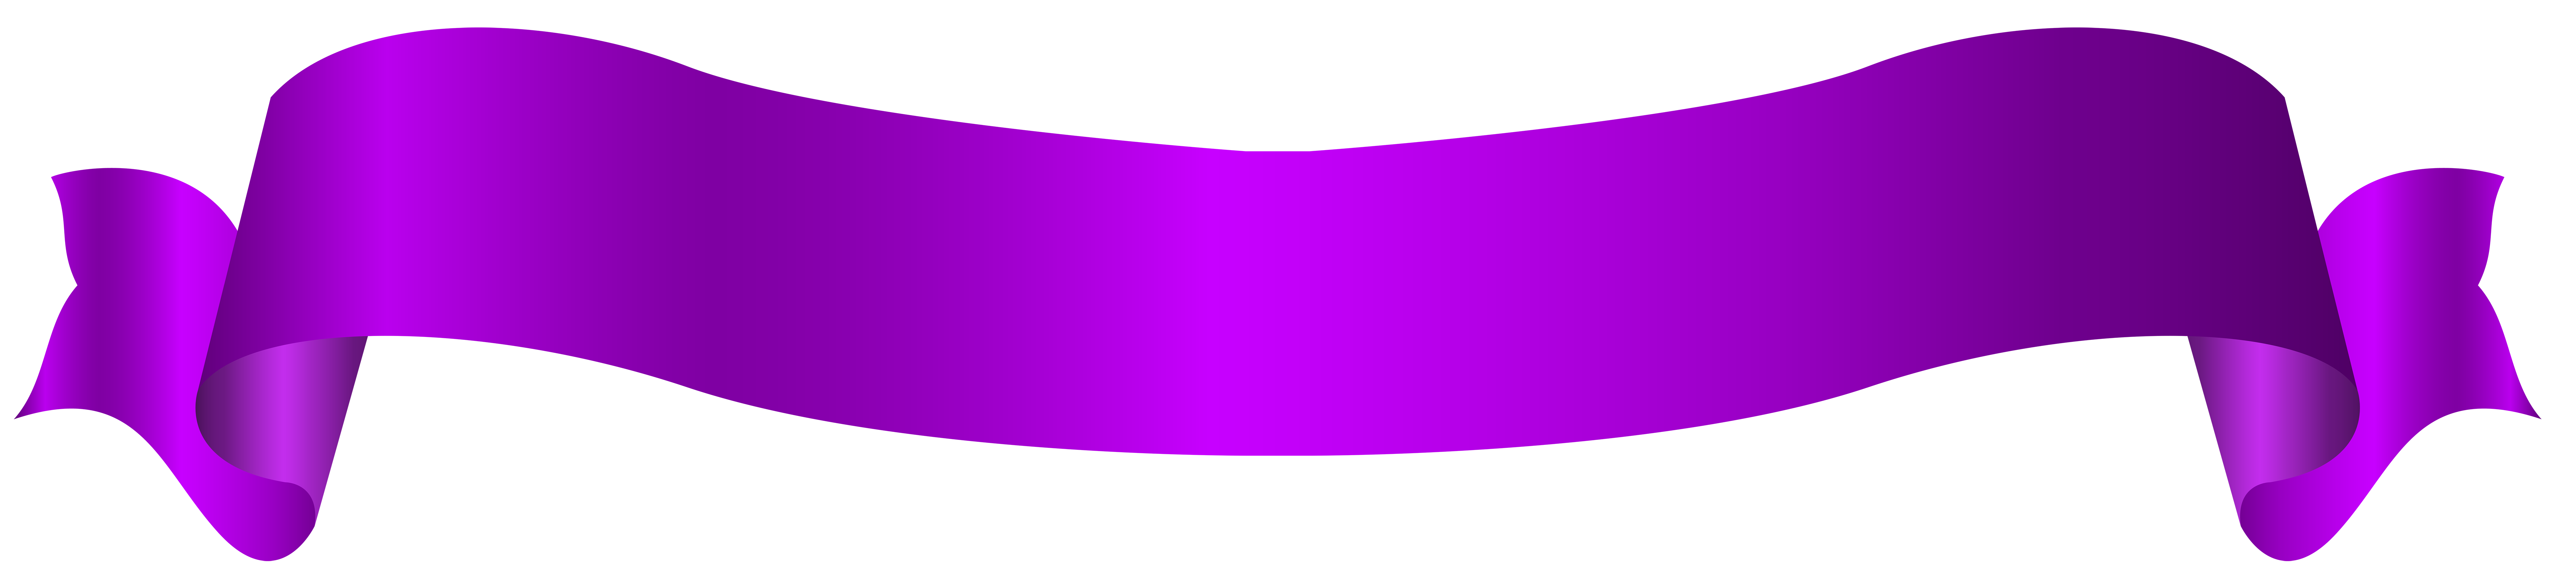 Violetter Banner PNG-Bild